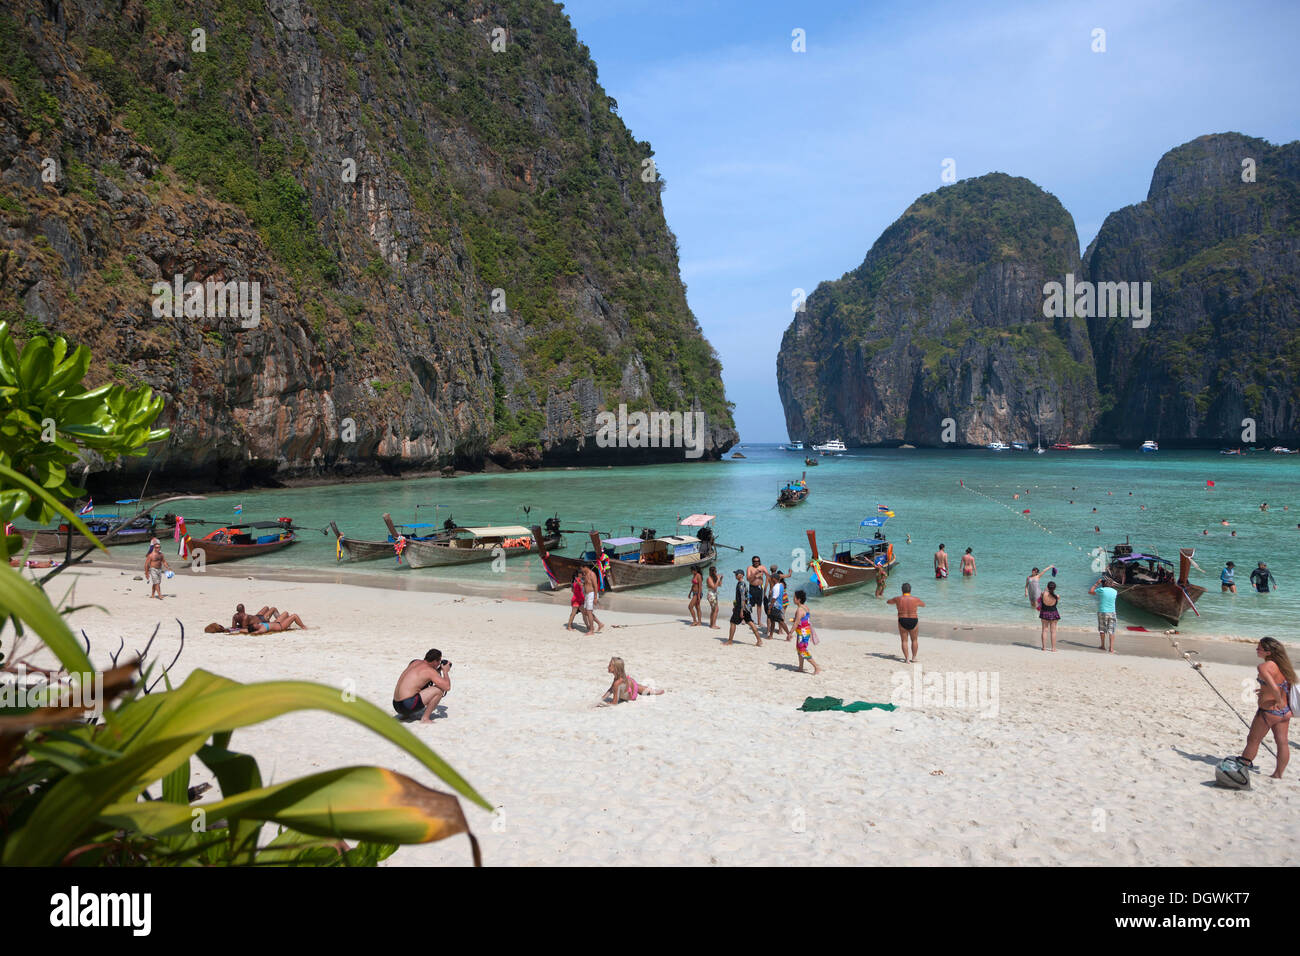 Les touristes et bateaux longtail sur la plage de sable de Maya Beach, Ko Phi Phi Island, Phuket, Thailande, Asie Banque D'Images